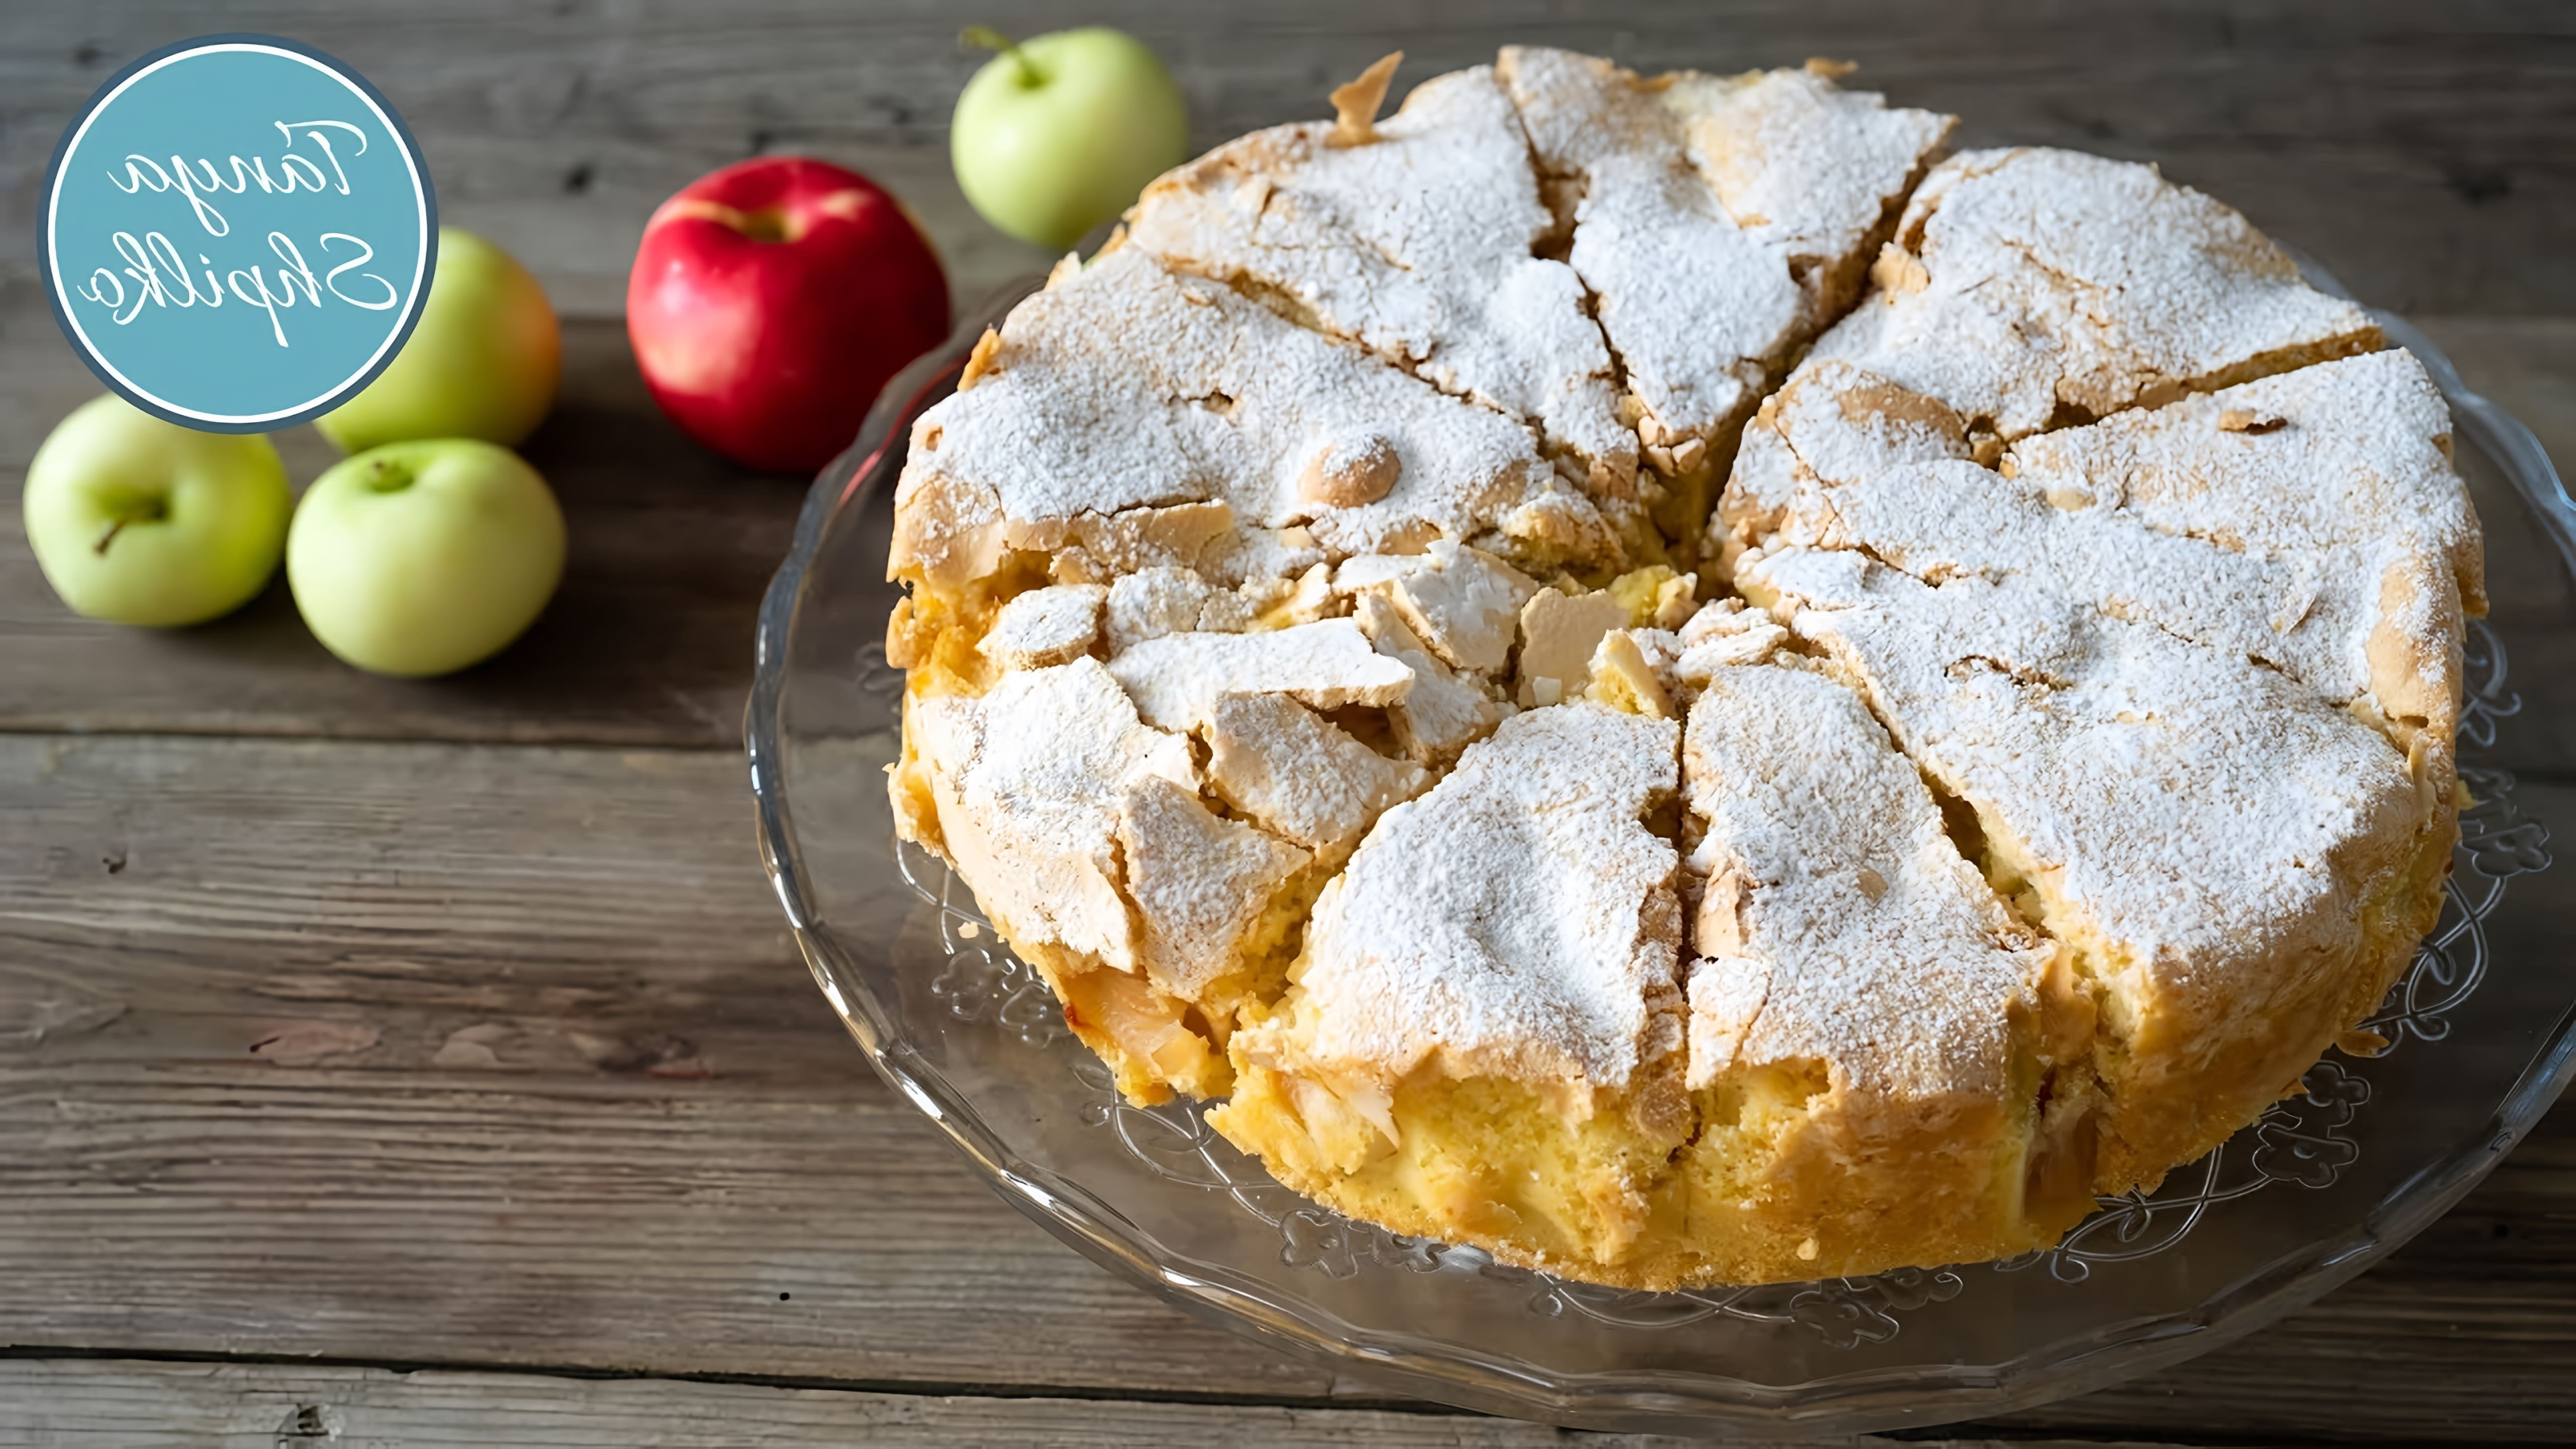 Видео как приготовить простой, но вкусный яблочный пирог, используя всего четыре ингредиента - яйца, сахар, муку и яблоки